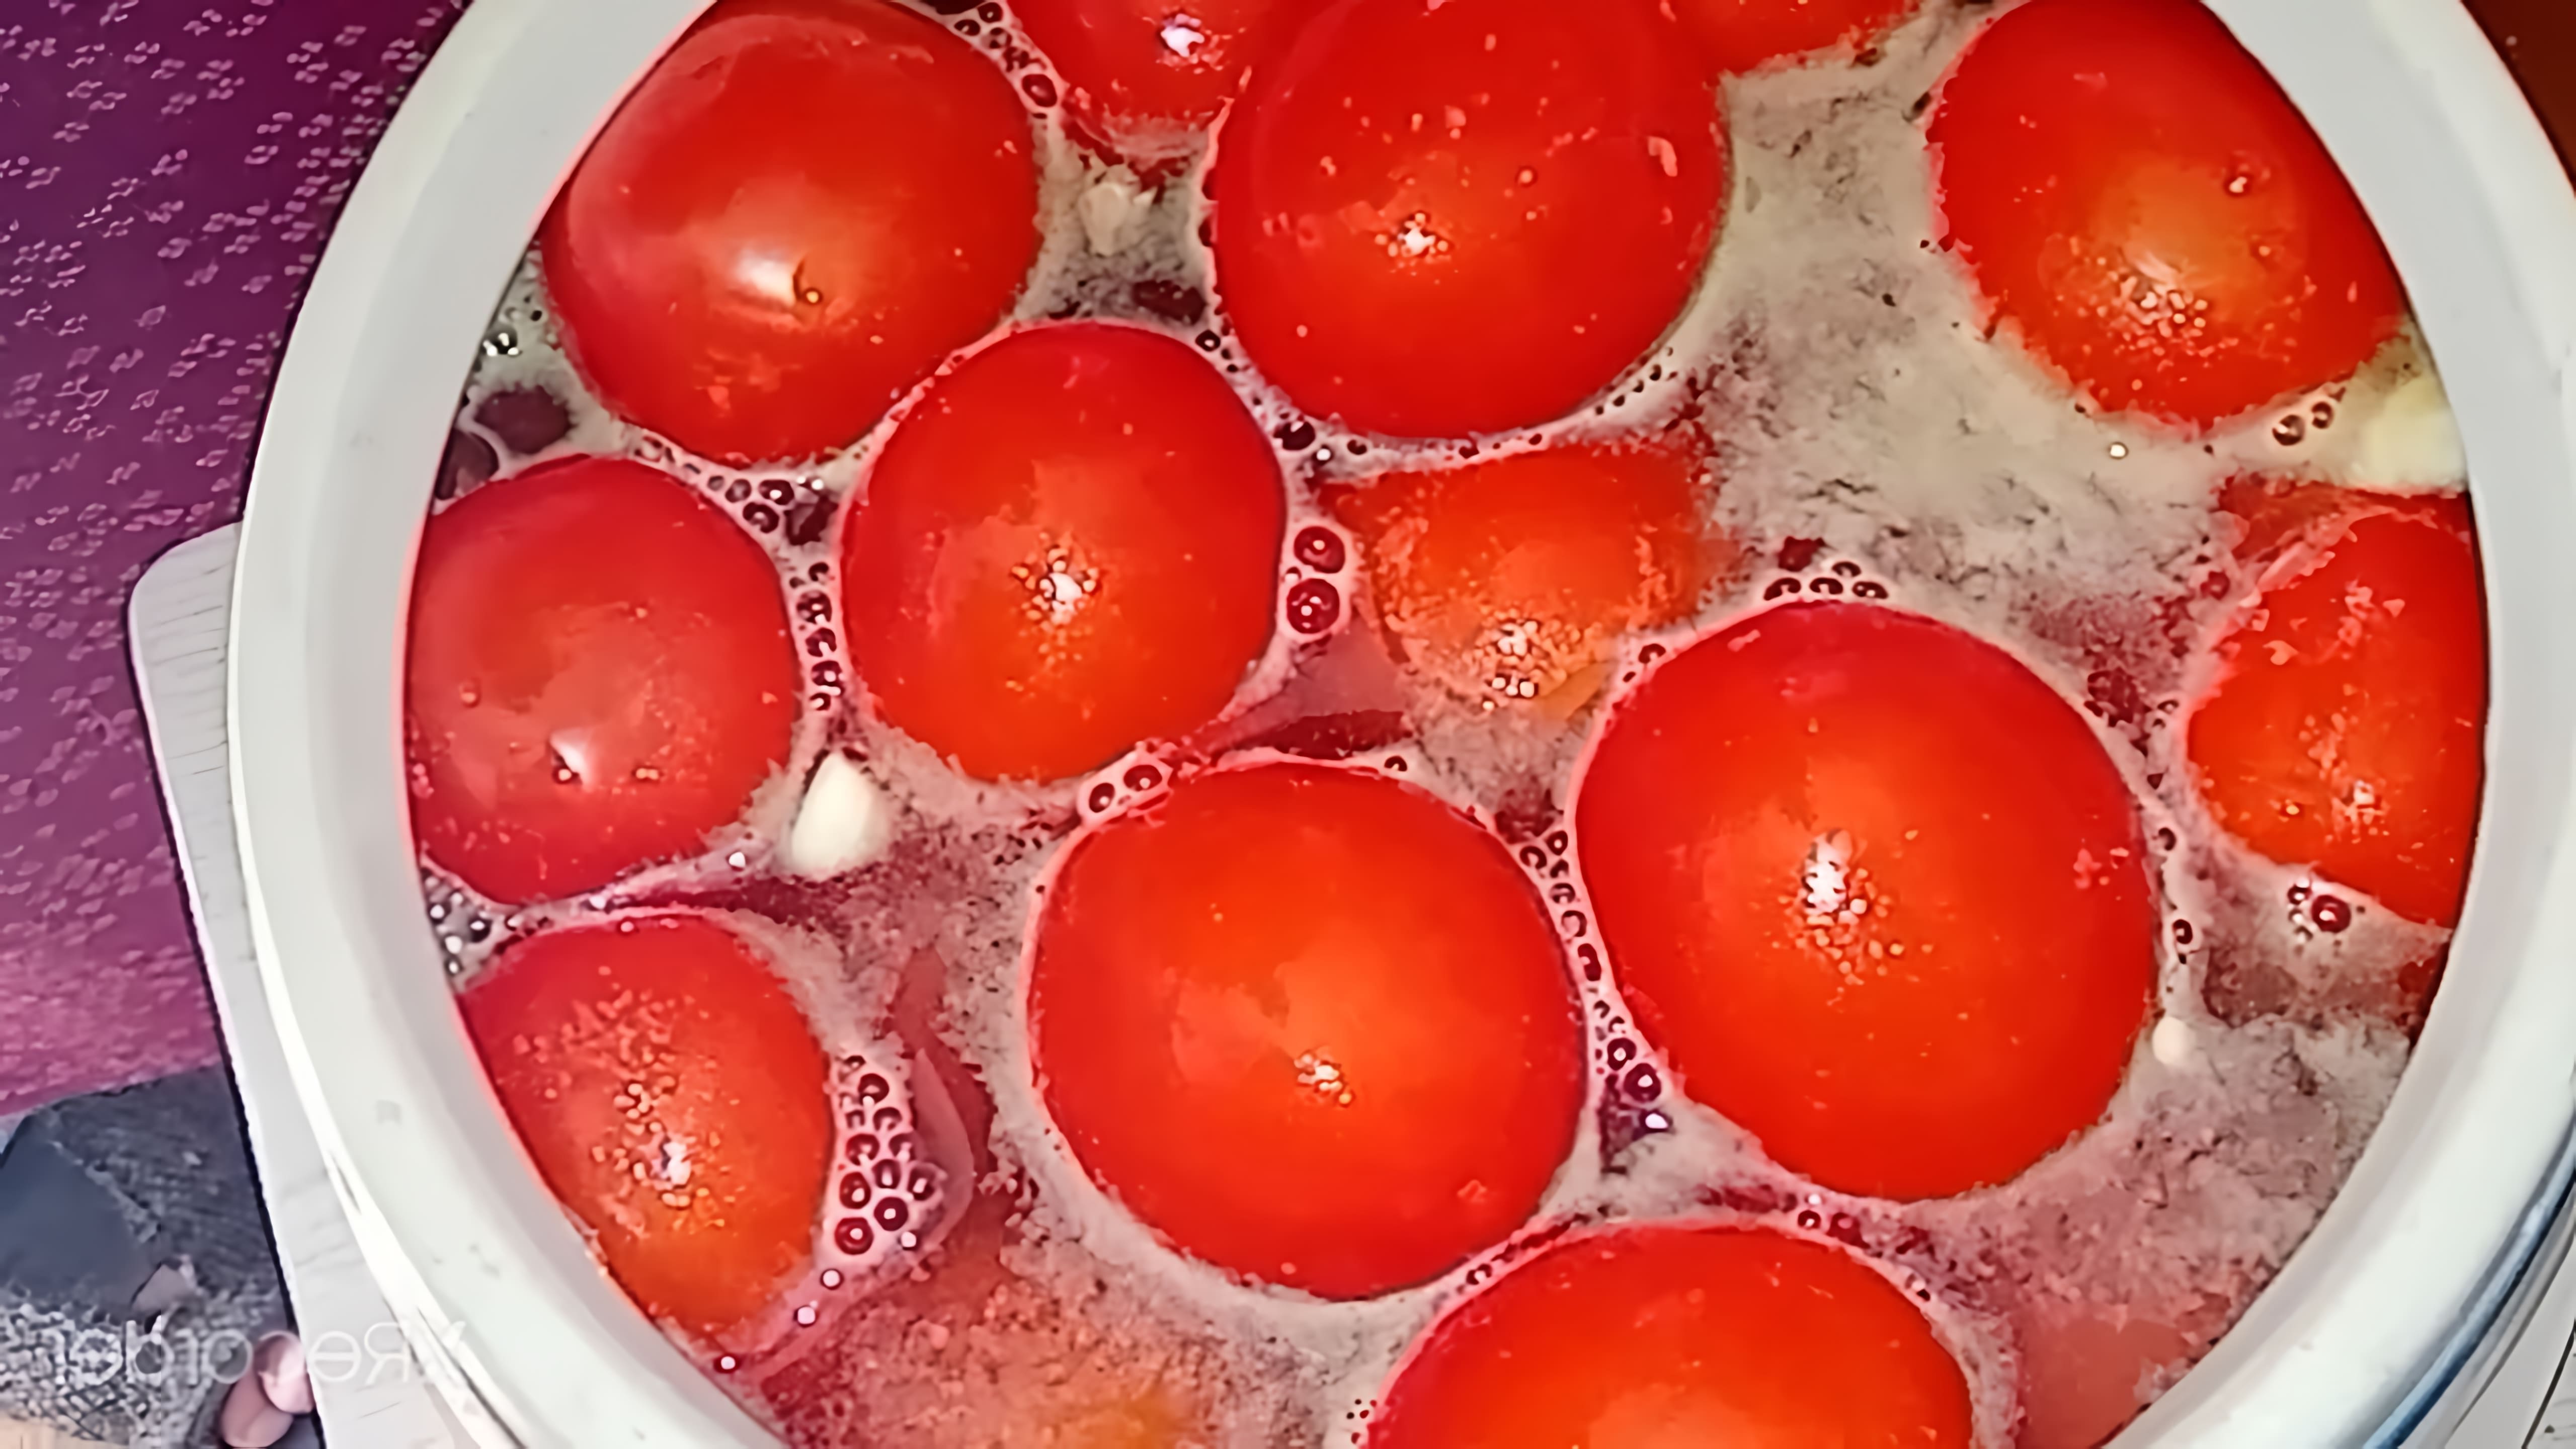 В этом видео демонстрируется процесс приготовления ядреных помидоров с горчицей и водкой